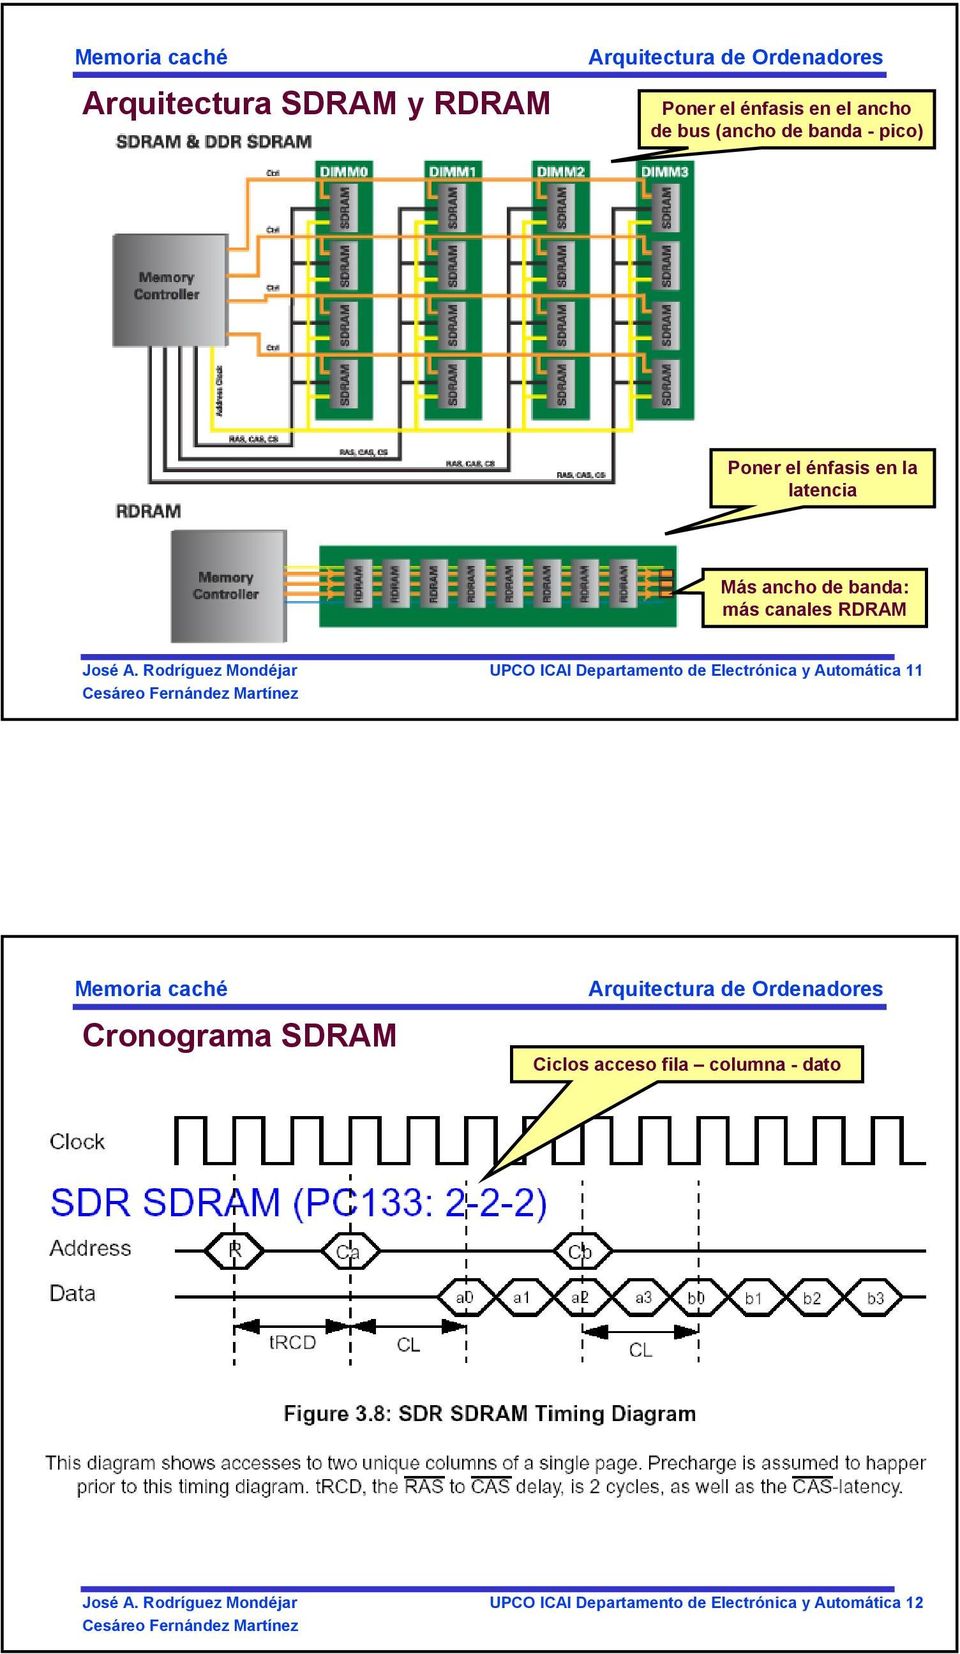 UPCO ICAI Departamento de Electrónica y Automática 11 Cronograma SDRAM Ciclos